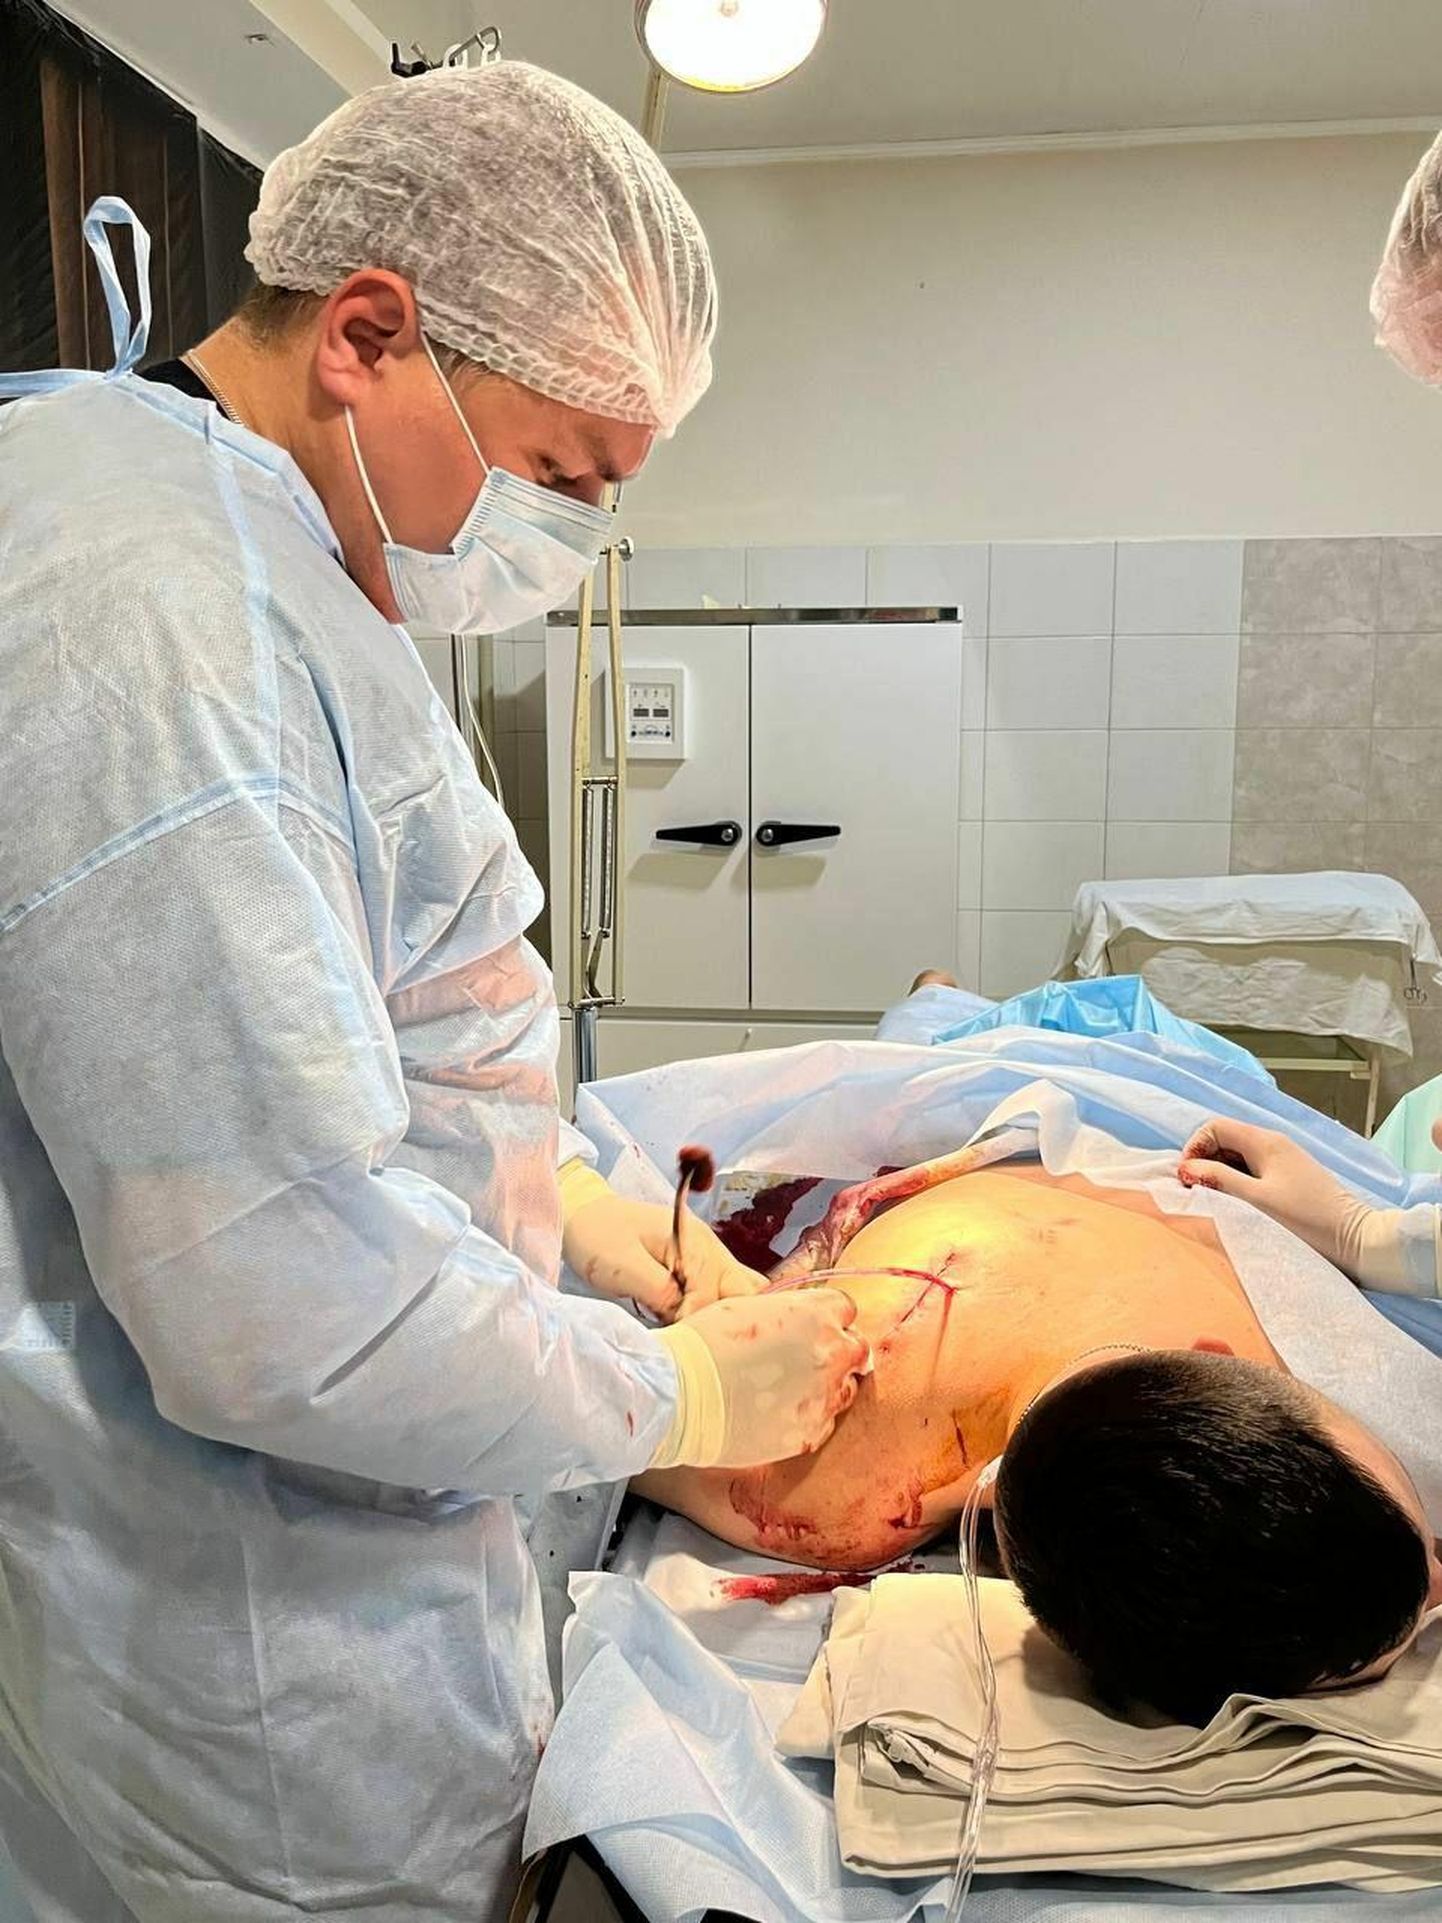 Viis kuud vabatahtlikuna Ukraina sõjaväehaiglas töötanud kirurg Sergii Panasenko ütlust mööda hakkas kolm kuud pärast sõja algust rahvusvahelise abi vähenemine haiglas tunda andma.